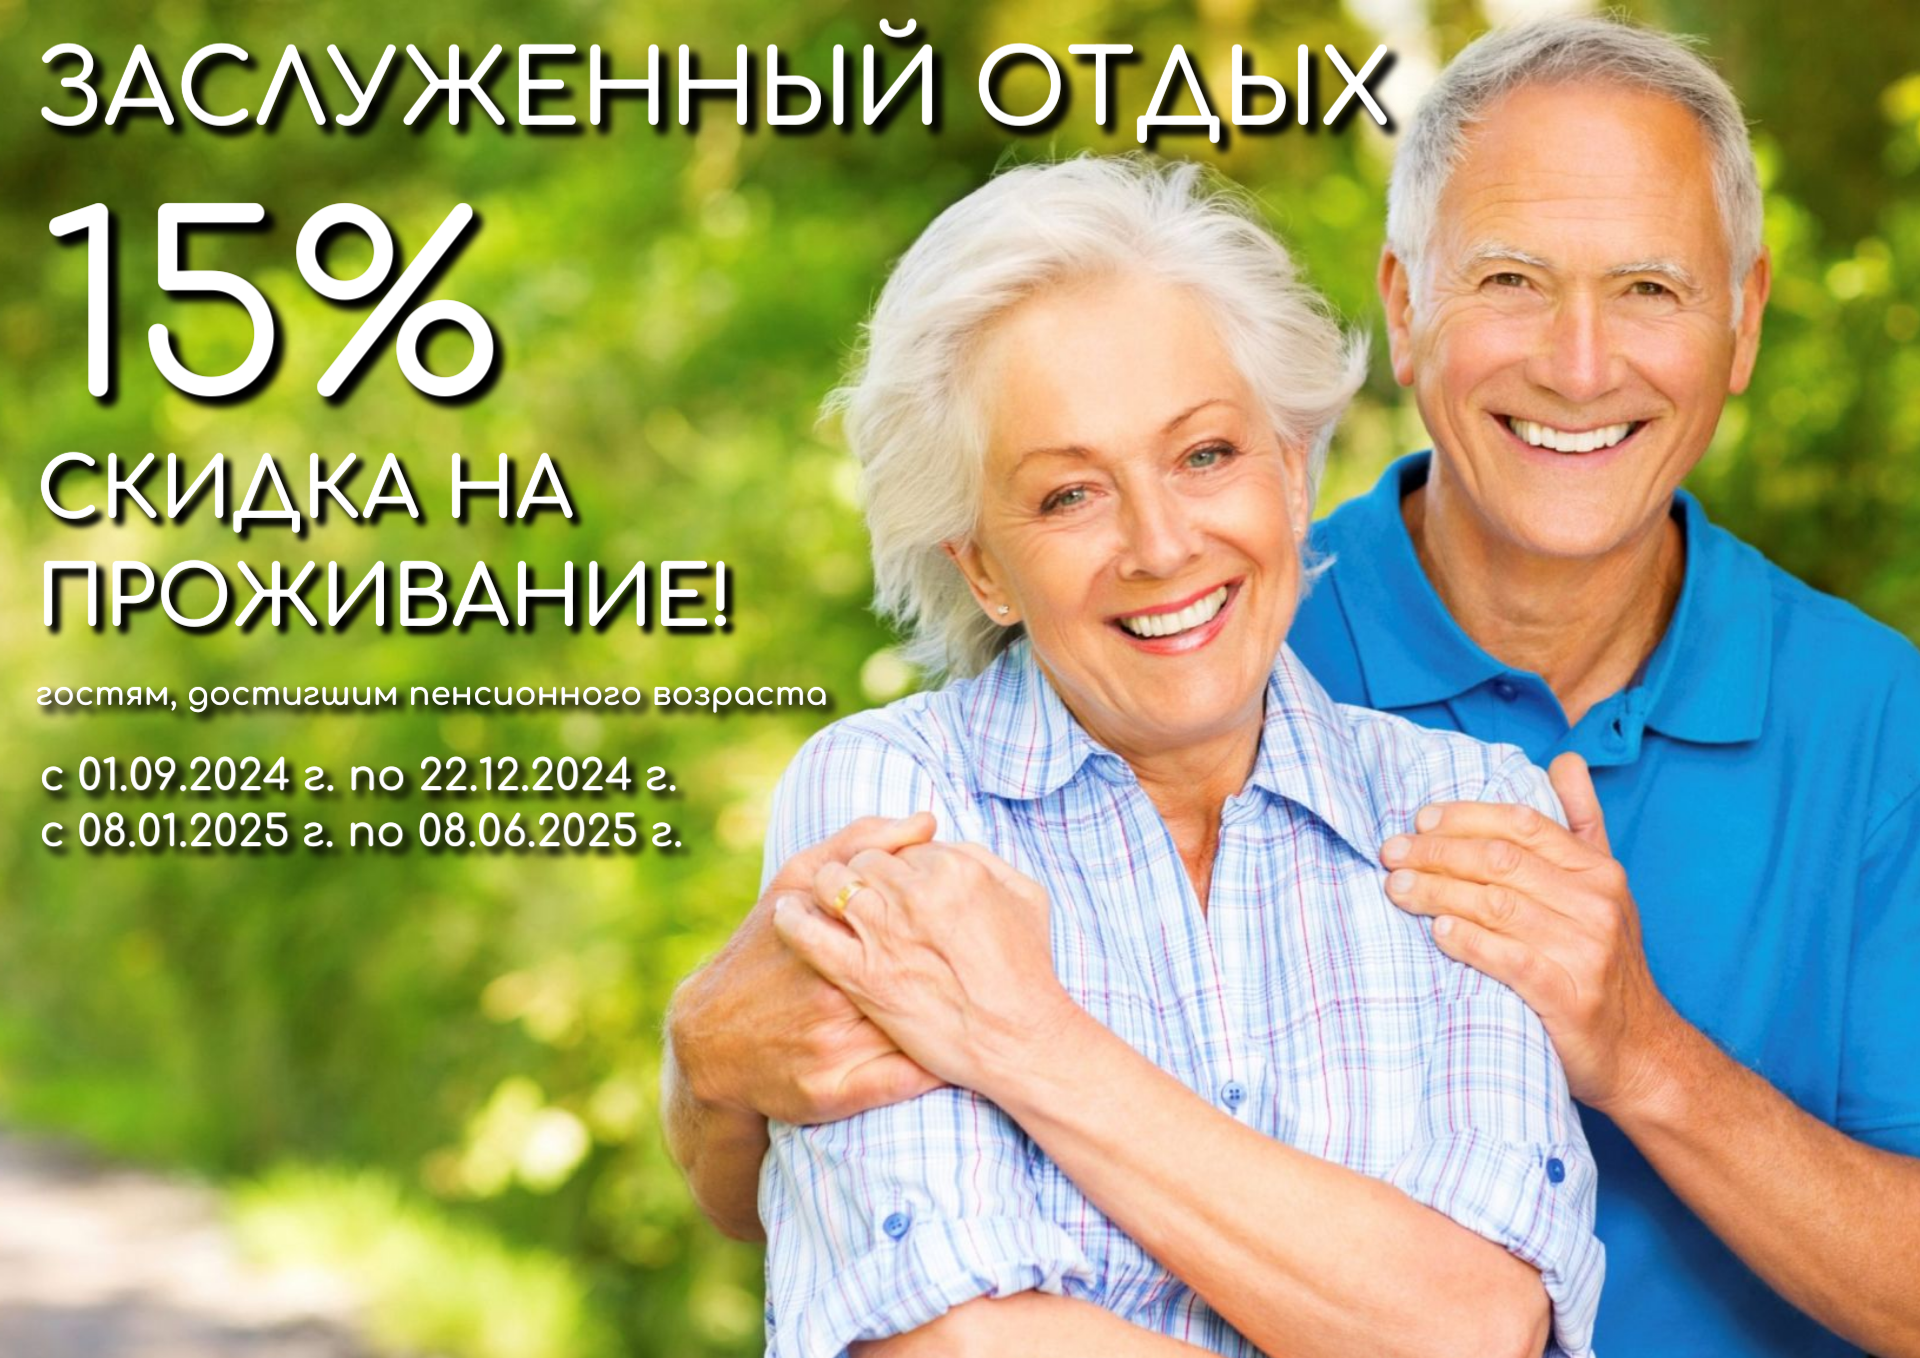 Акция «Заслуженный отдых» - 15% скидка пенсионерам на проживание